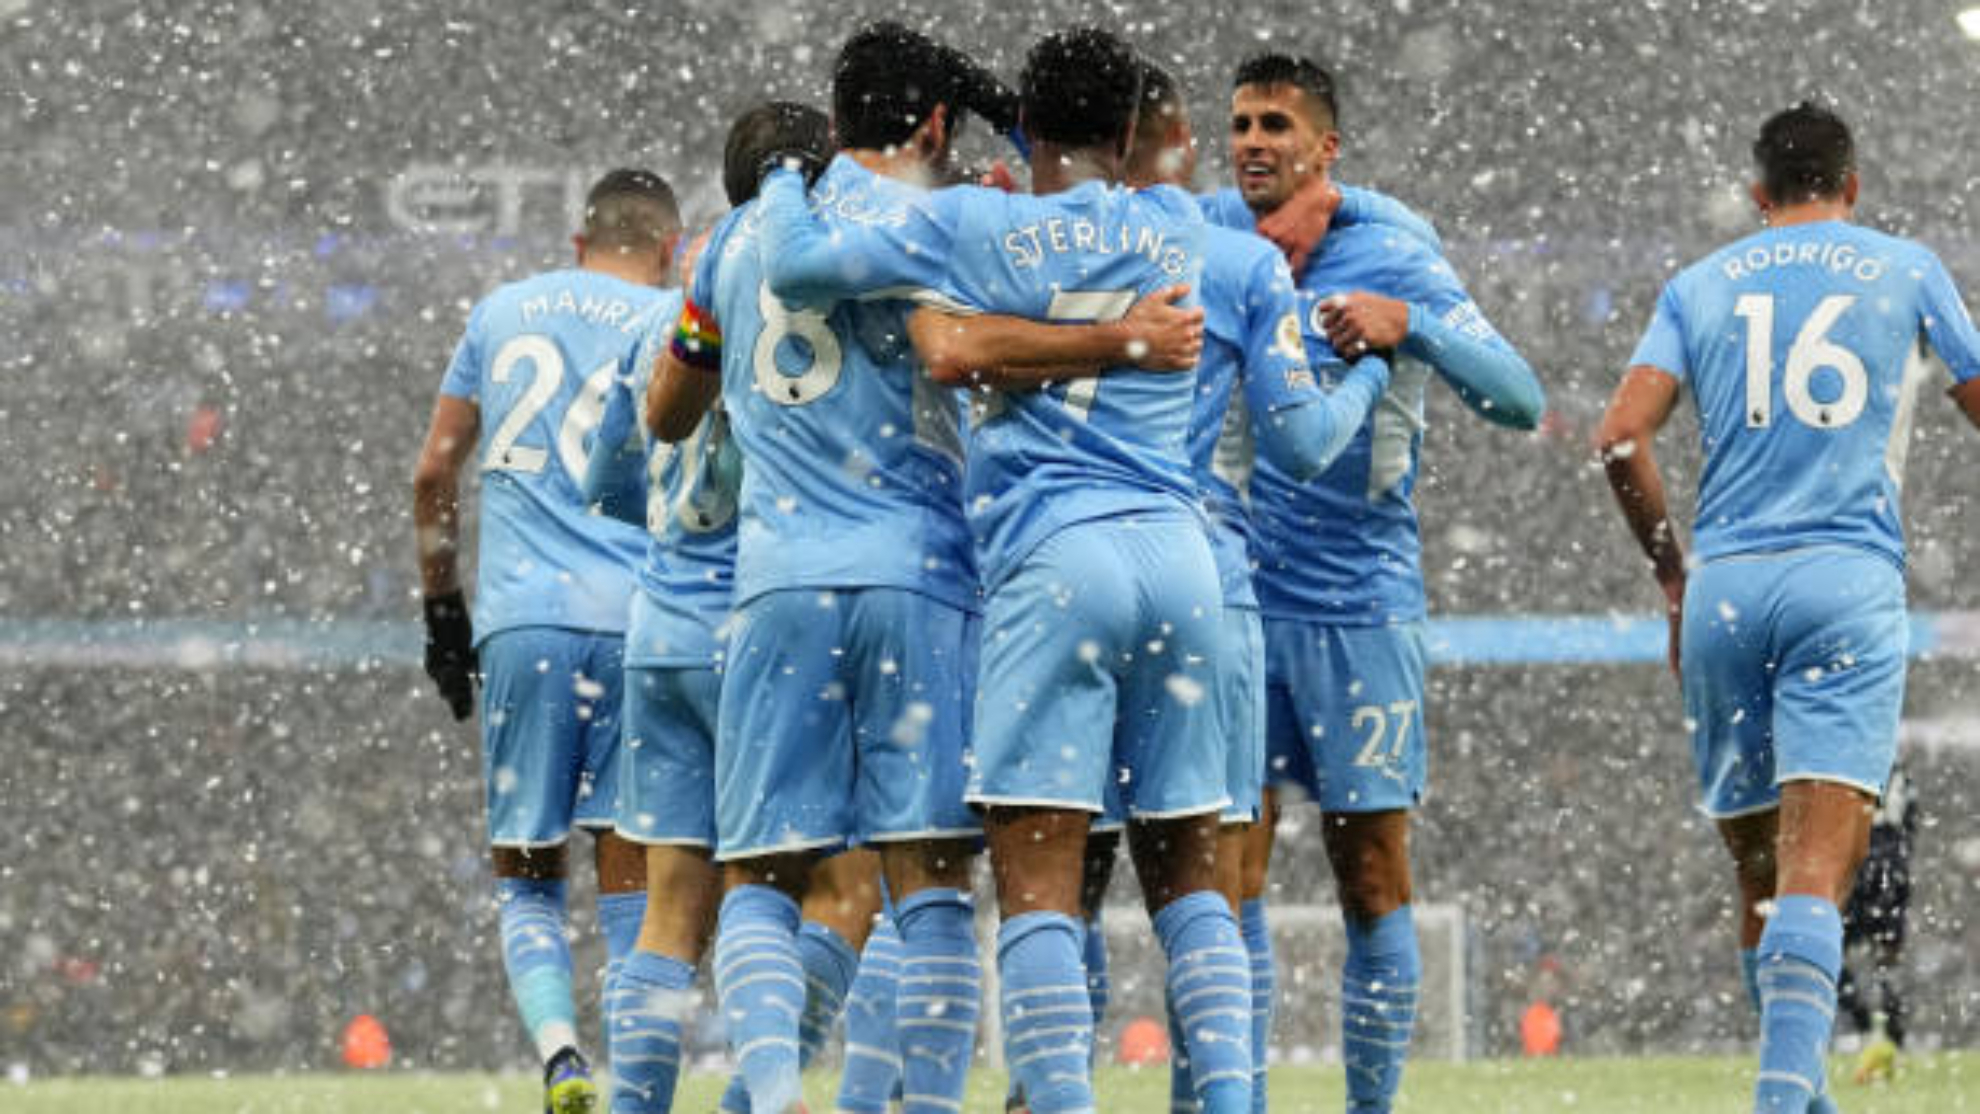 Jugadoresd el Manchester City celebran el gol de Gundogan